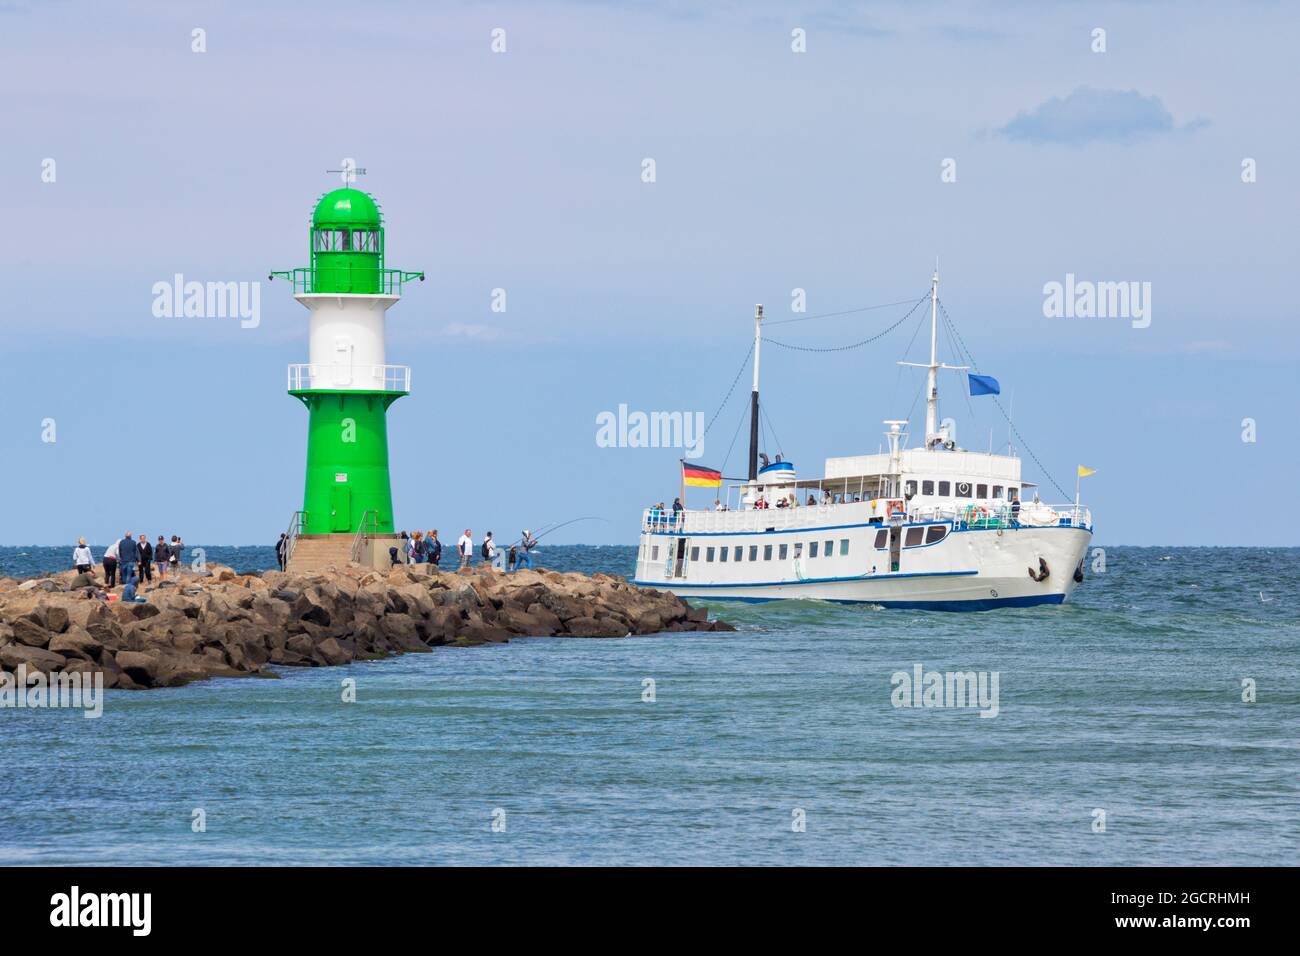 Ausflugsboot am grünen Leuchtturm an der Spitze des Wellenbrechers des Hafens von Warnemünde vorbei. Stockfoto